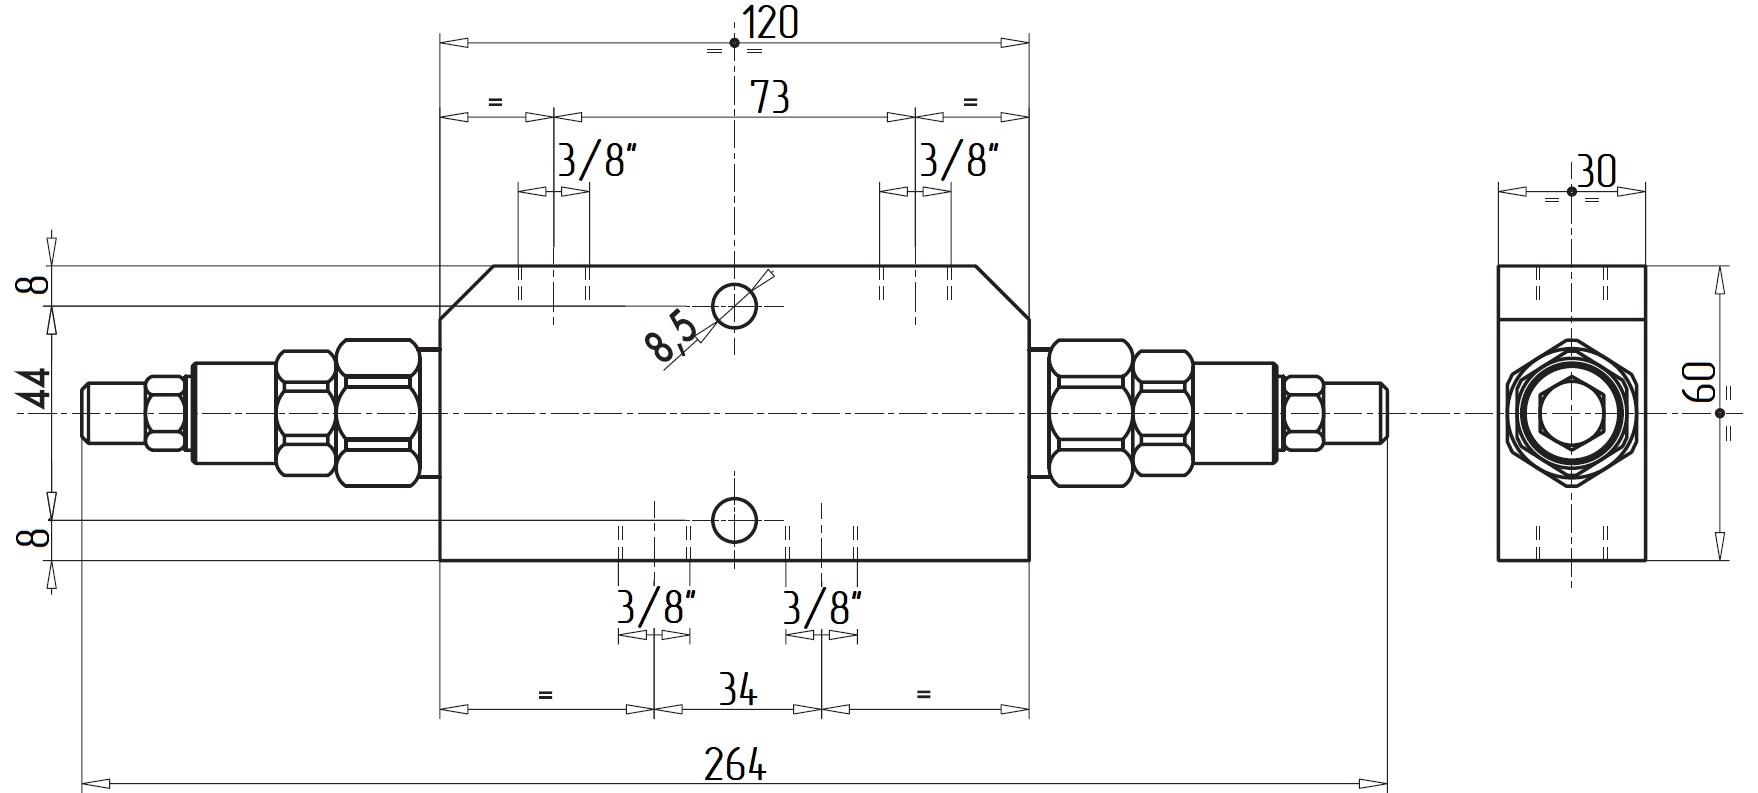 Габаритные размеры V0420-RP18-VBCD 3/8 DE RP 1:8 Подпорно-тормозной клапан двусторонний